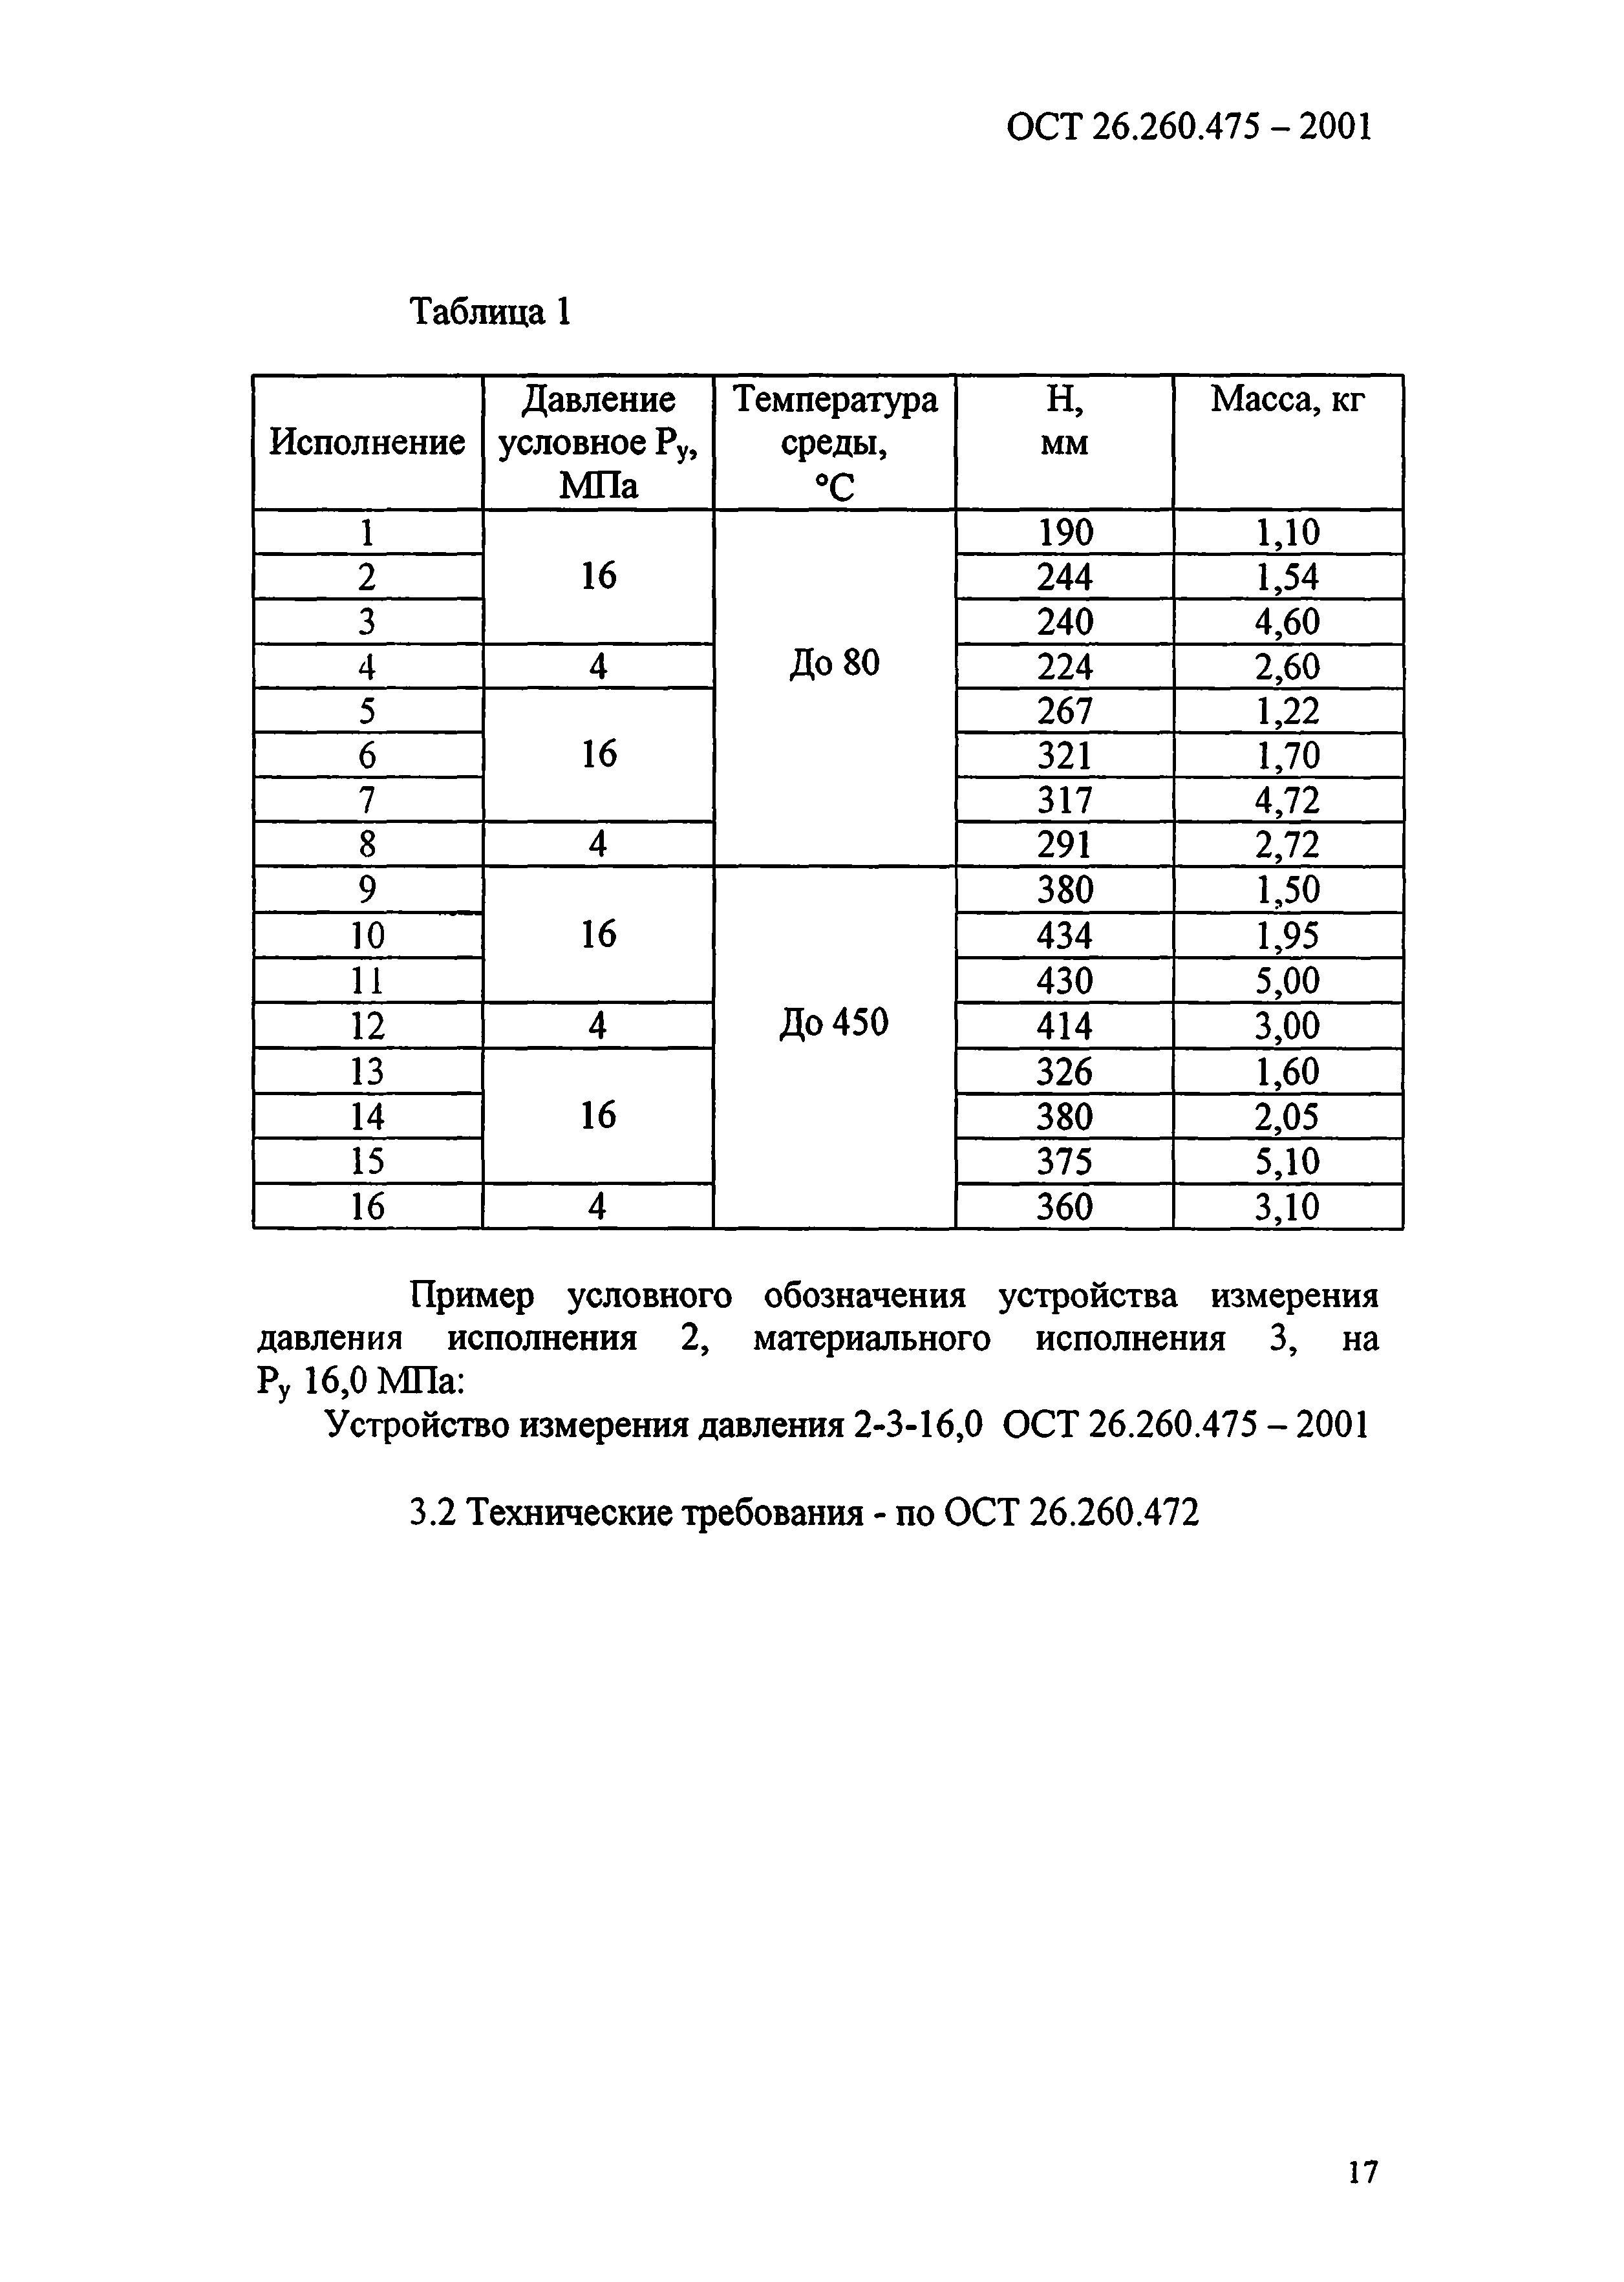 ОСТ 26.260.475-2001